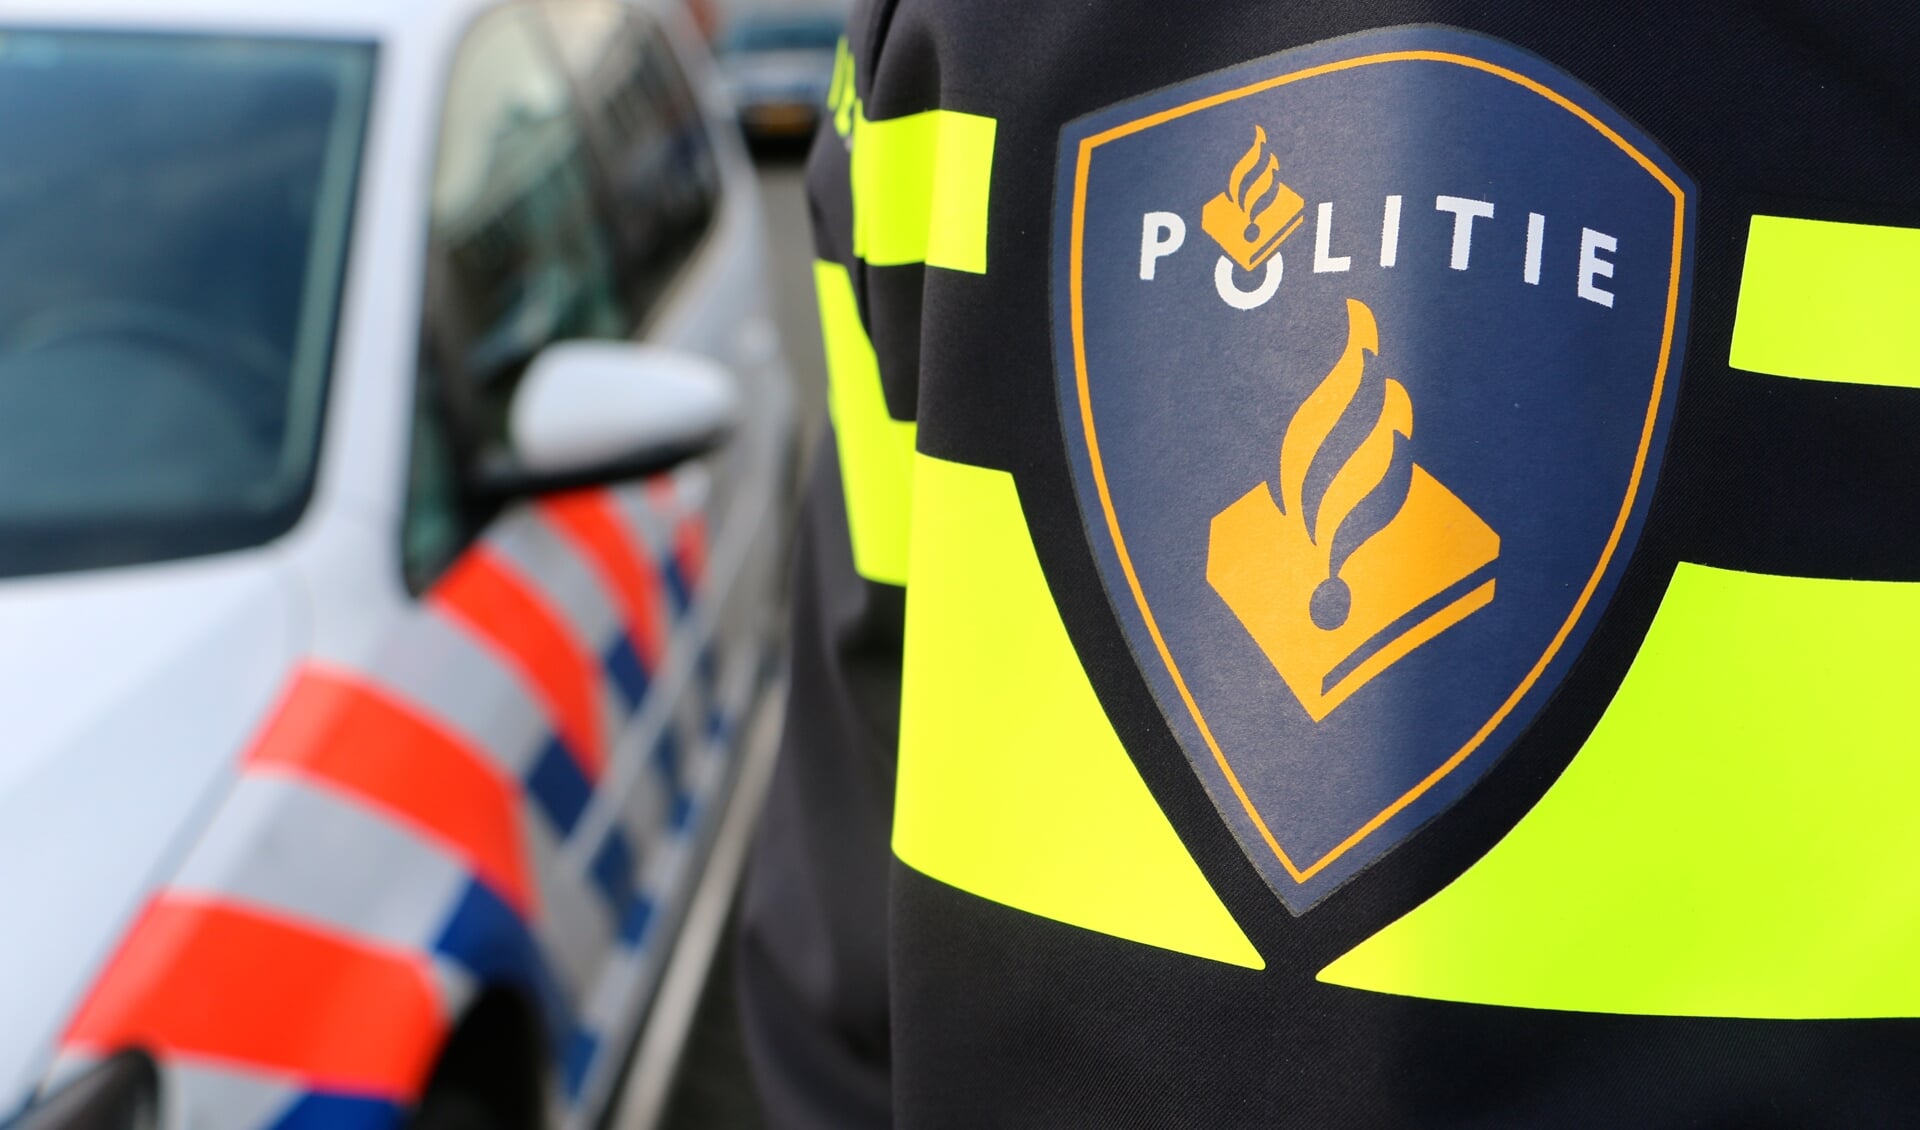 De politie heeft twee jonge verdachten aangehouden van een woningoverval in Hillegom.